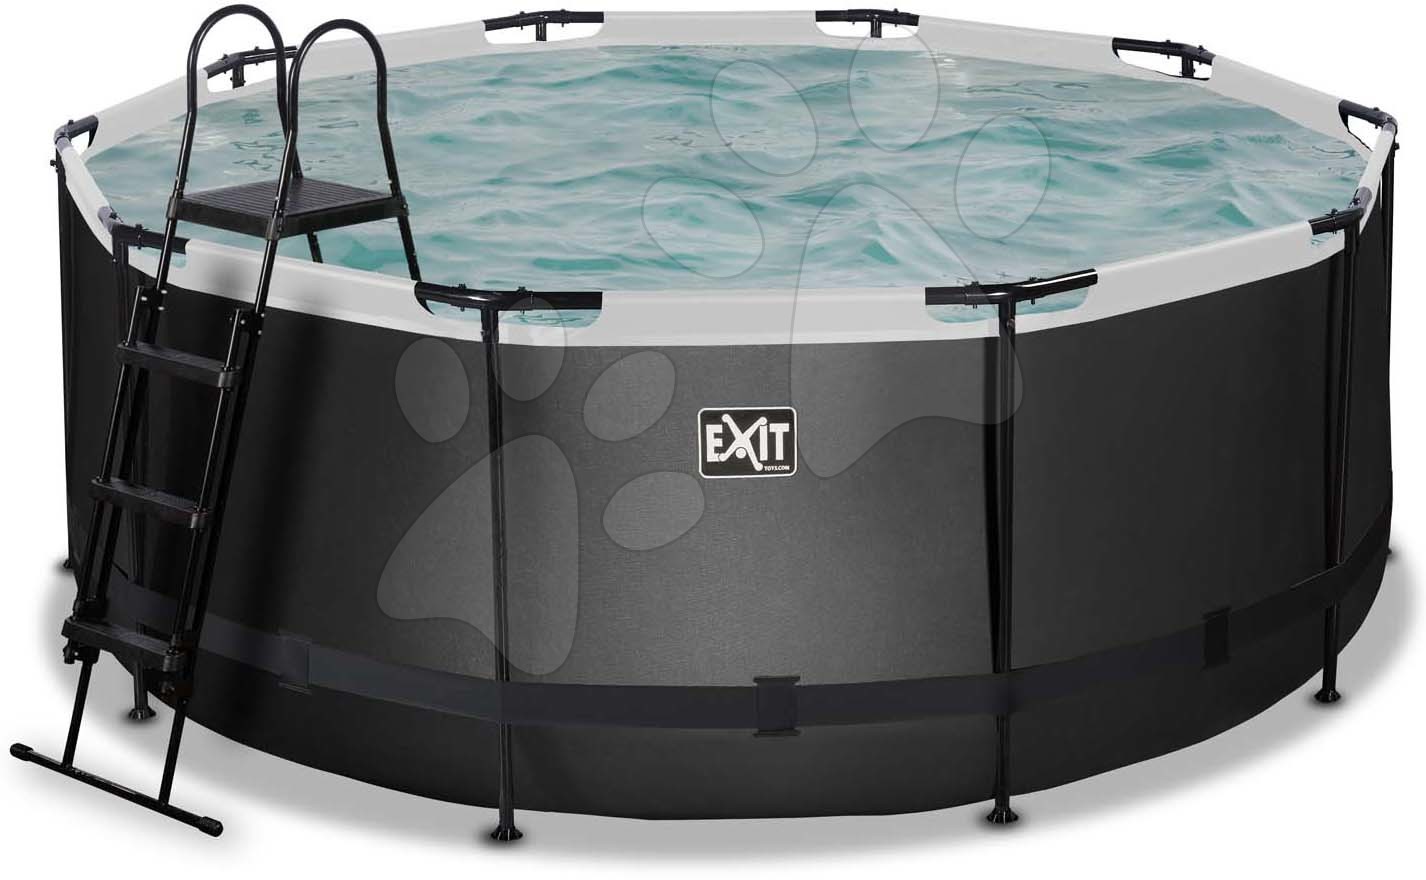 Medence homokszűrős vízforgatóval Black Leather pool Exit Toys kerek acél medencekeret 360*122 cm fekete 6 évtől